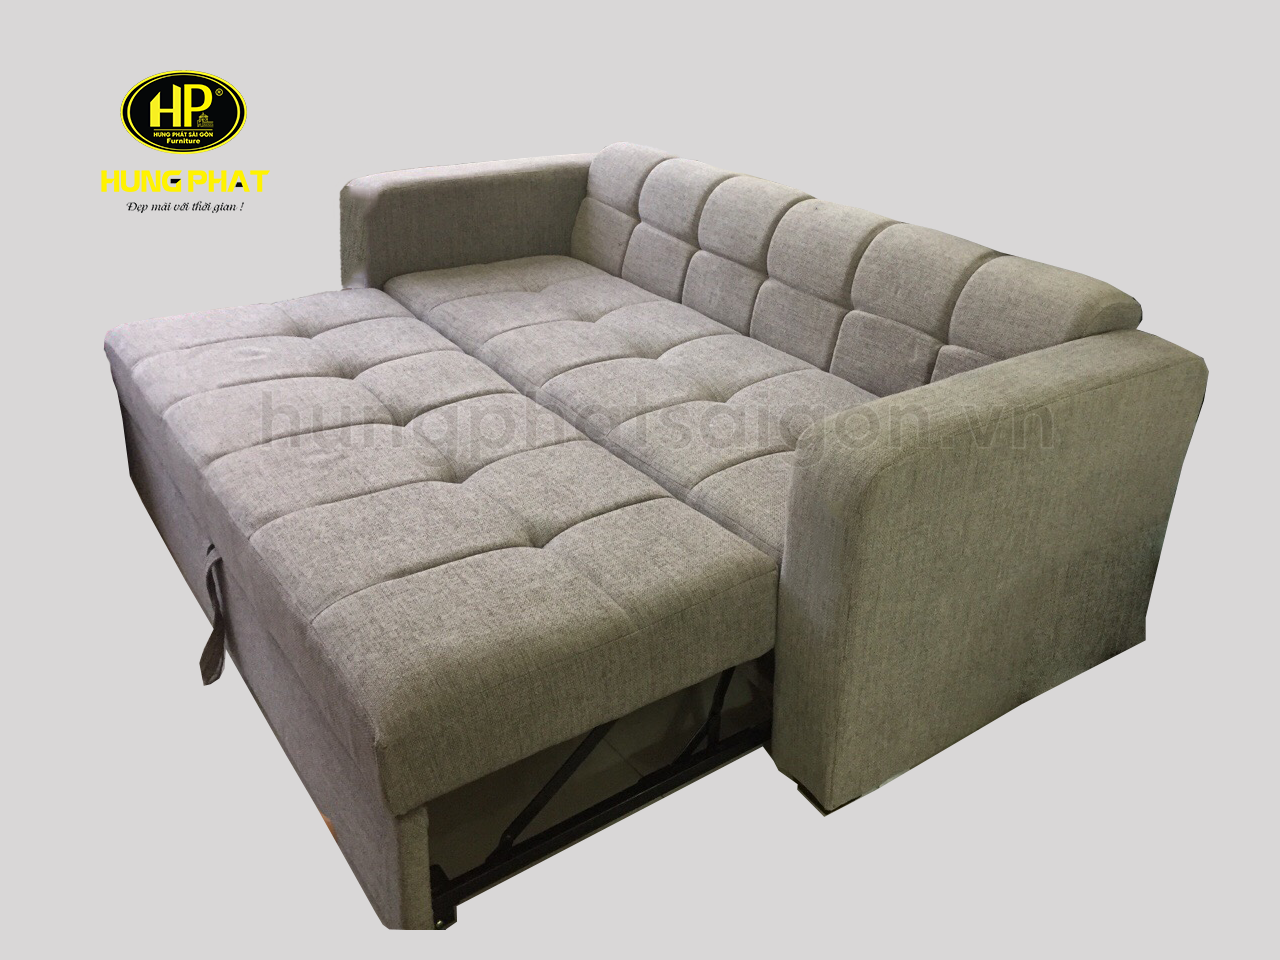 mẫu sofa giường giá rẻ đa năng uy tín chất lượng tại gò vấp